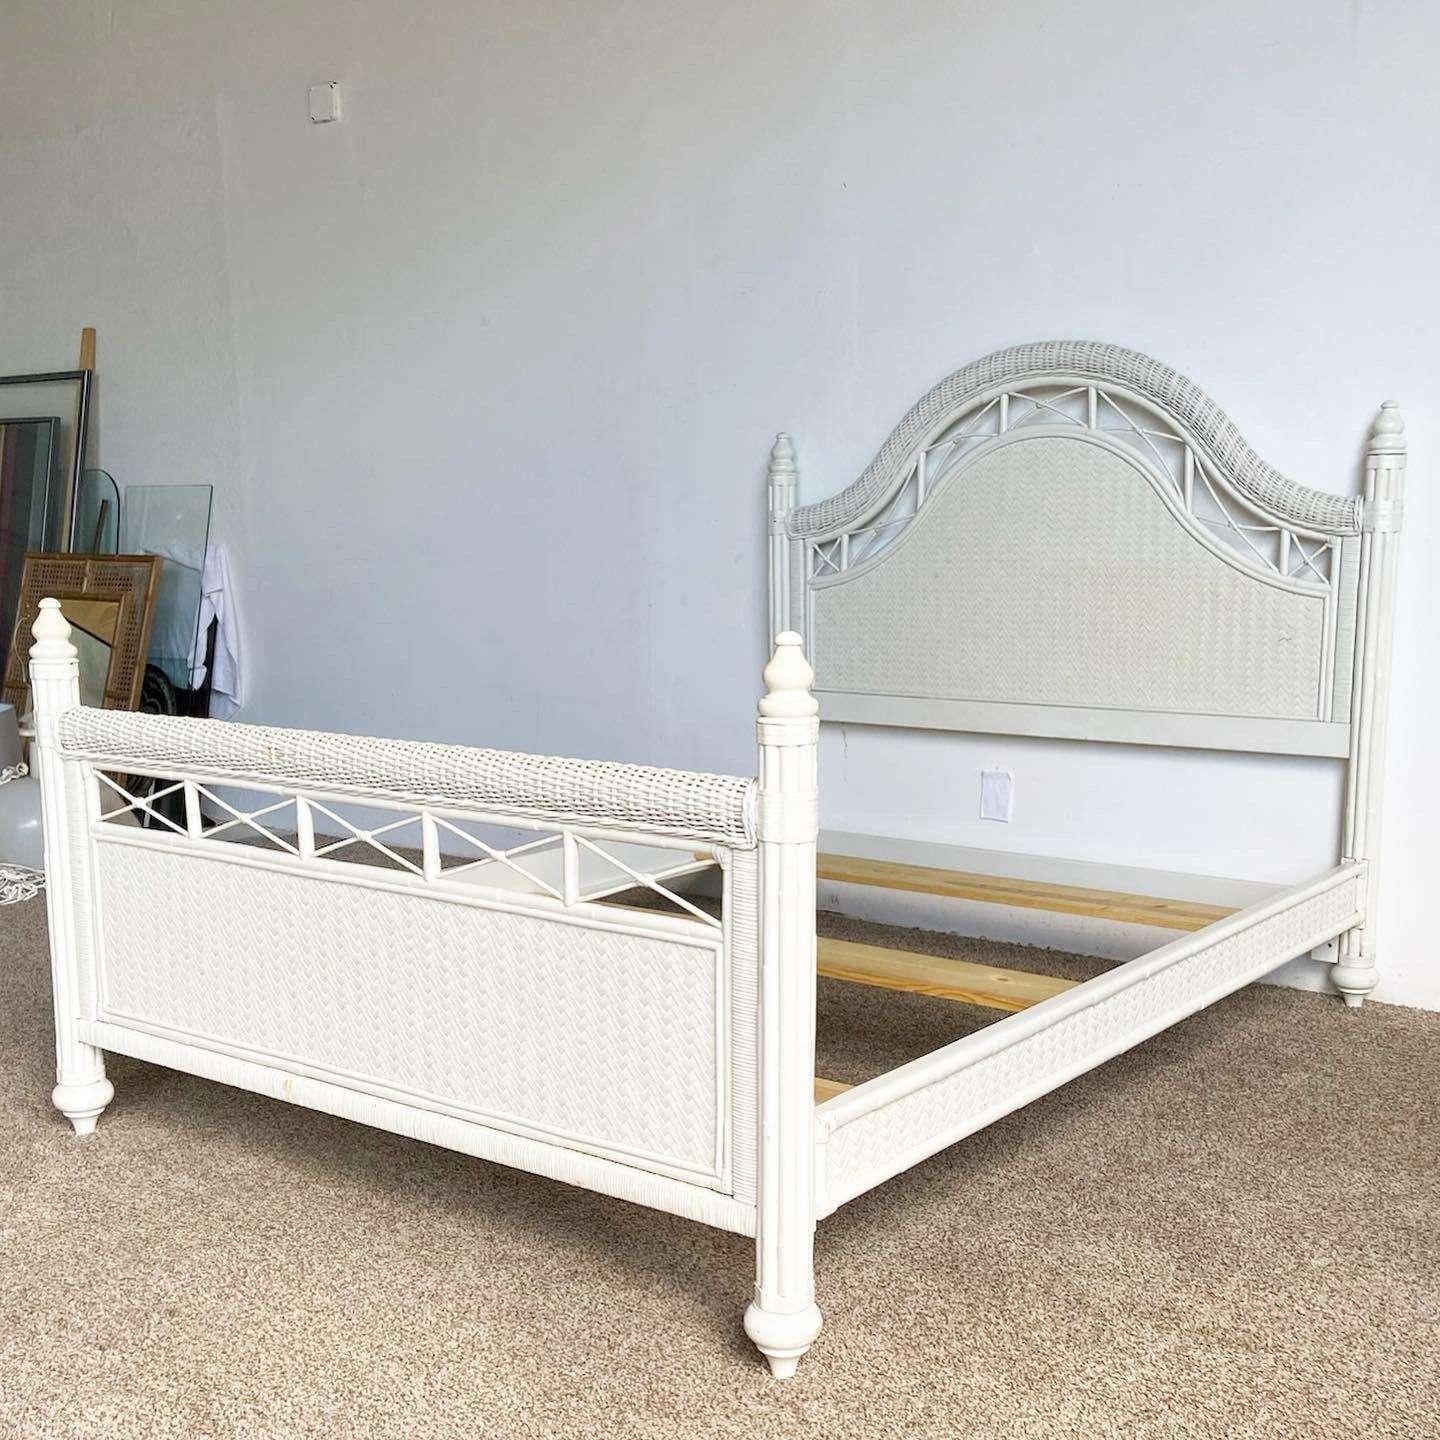 Exceptionnel cadre de lit queen size vintage boho chic avec tête de lit, rails latéraux et pied de lit. Construit avec du rotin de bambou et un tissage en chevrons à travers les surfaces.

Le pied de lit mesure 38 